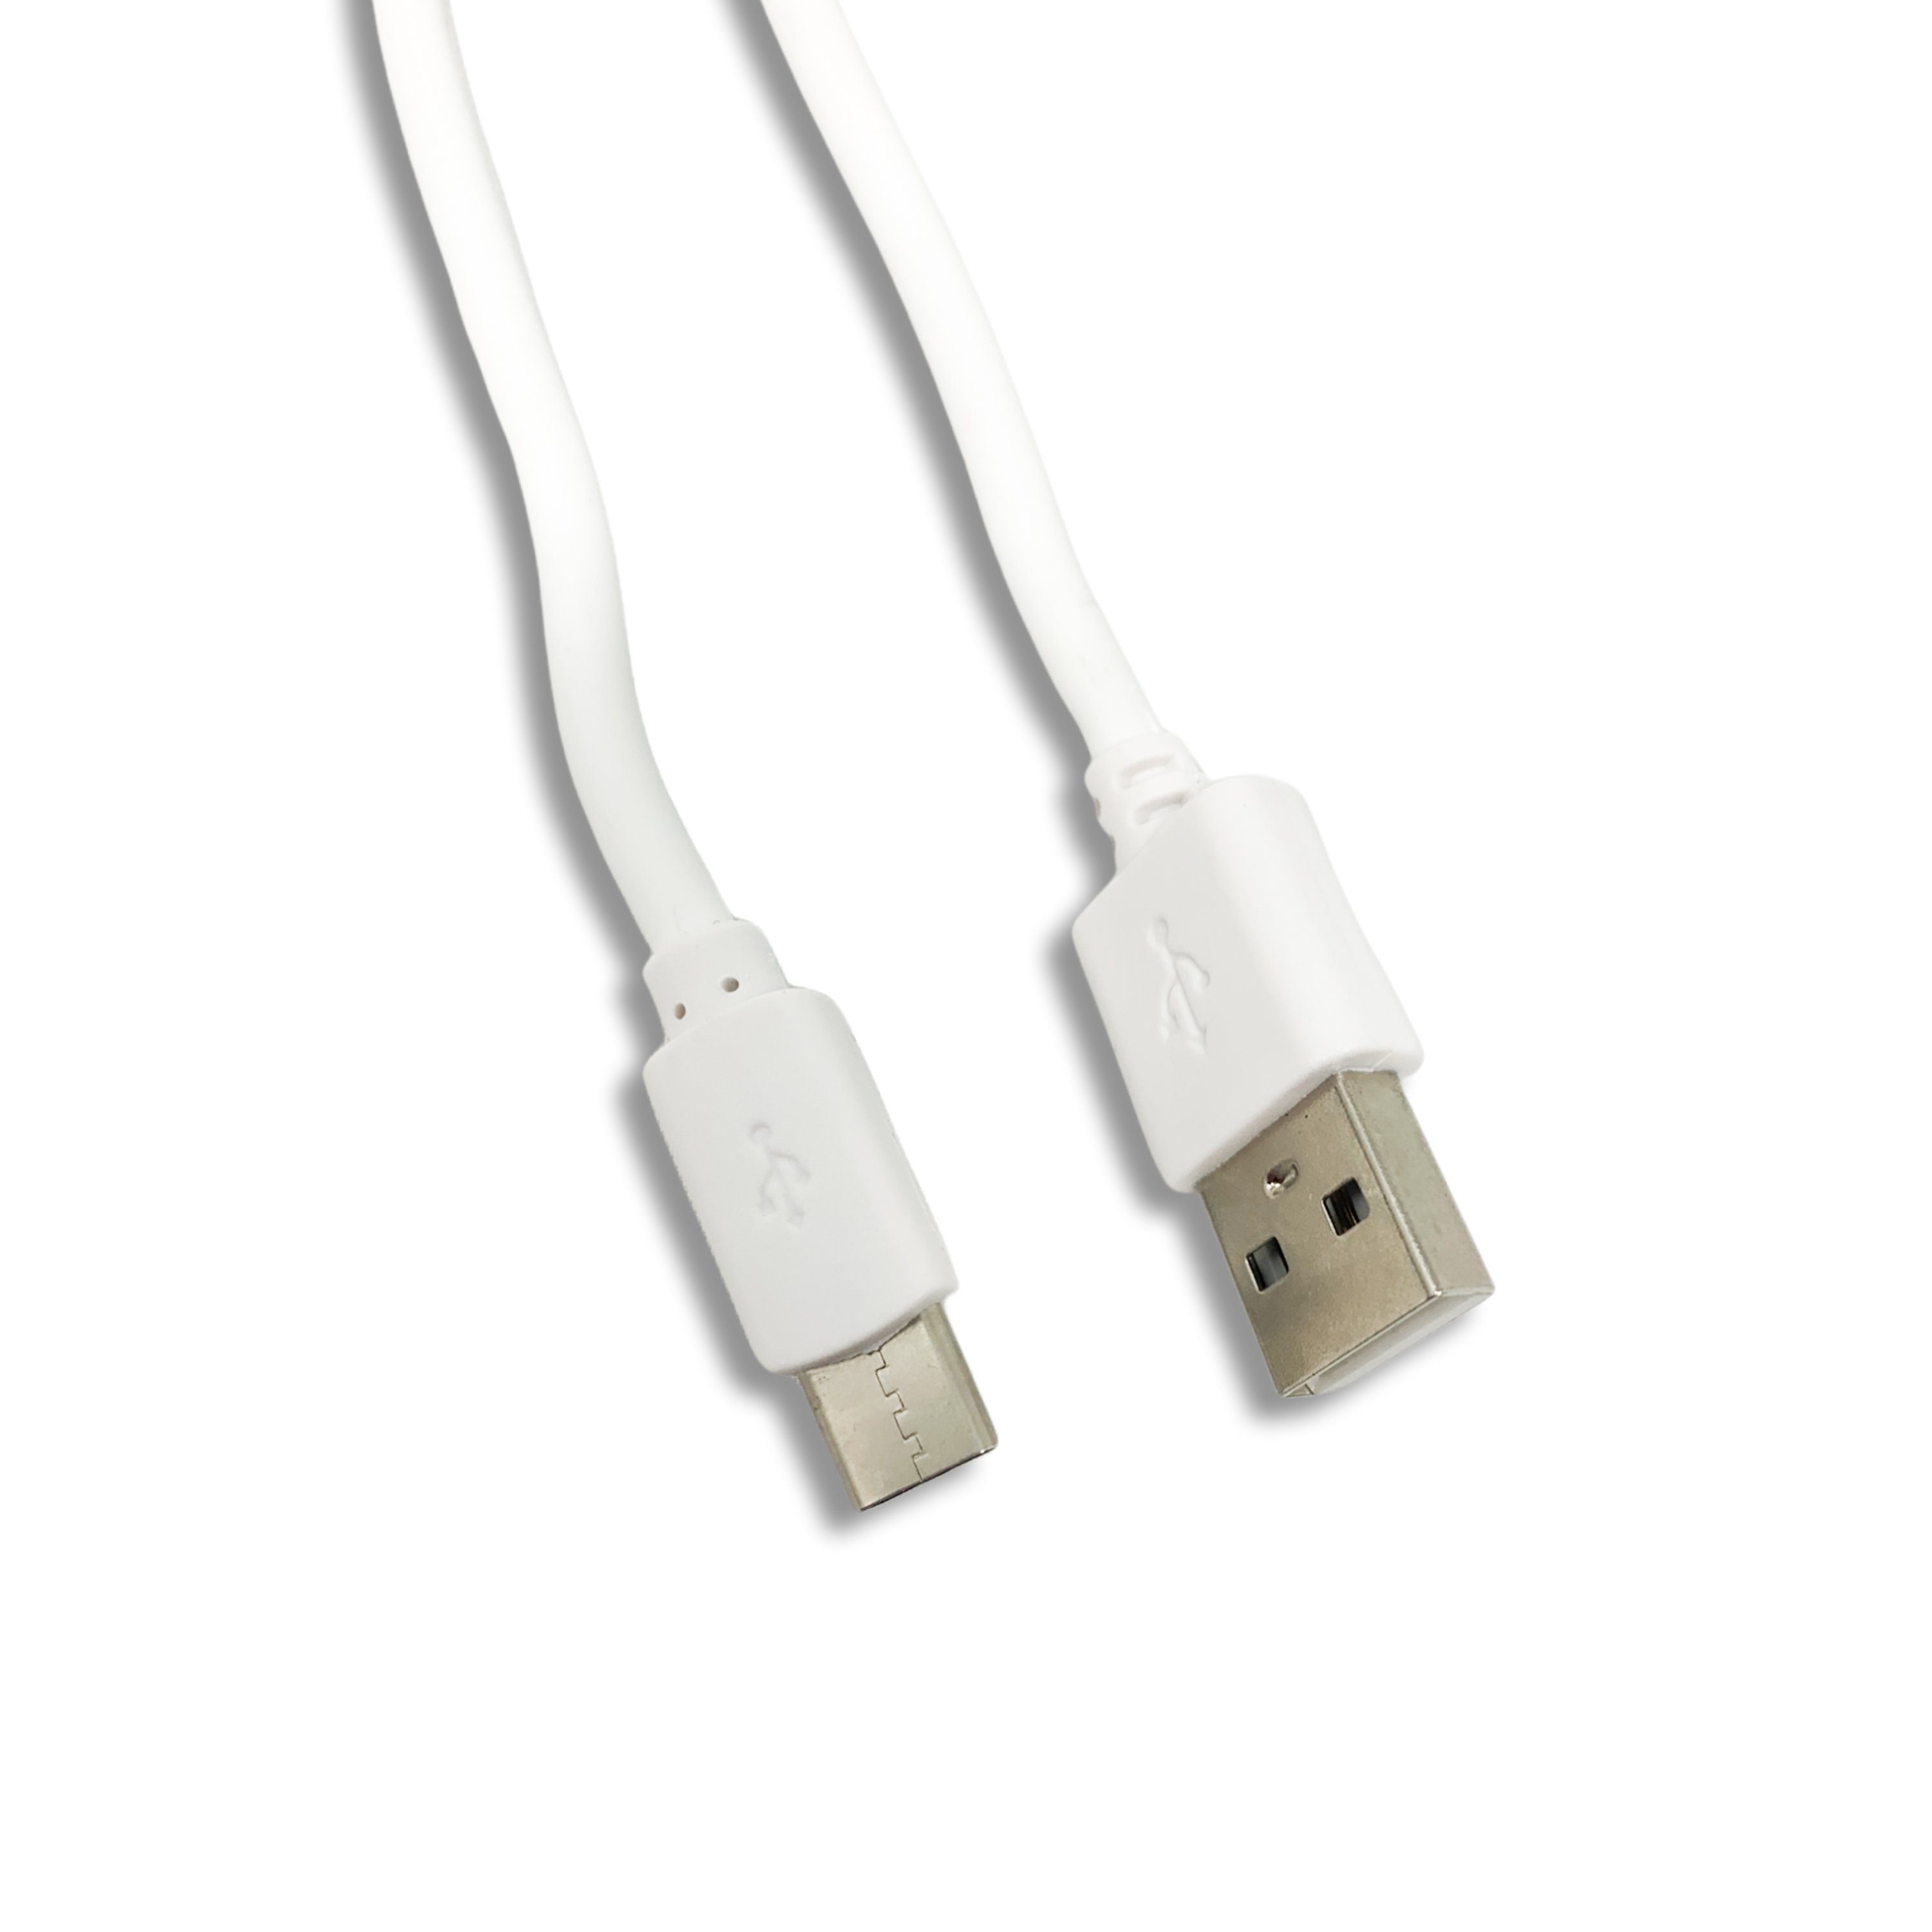 H-basics »Ladekabel USB-C 3 meter - für neue modelle Samsung, Huawei,  Xiaomi, Oneplus etc. 2.1A Output« Lightningkabel, (300 cm) online kaufen |  OTTO